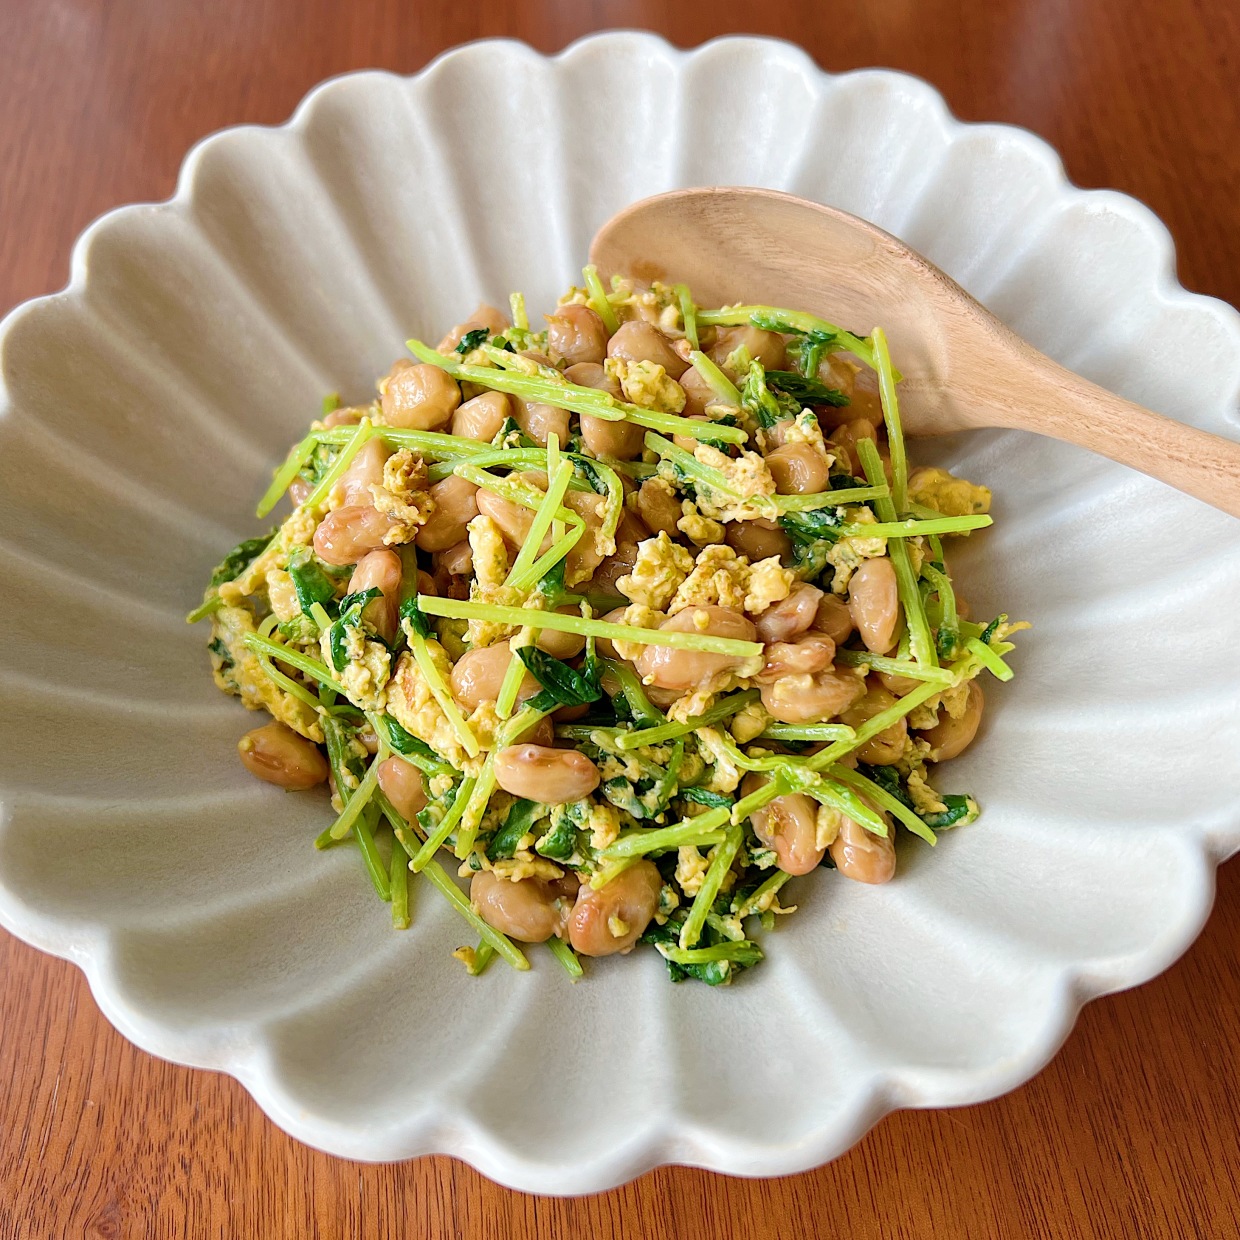  「納豆」に混ぜると体がよろこぶ“食材の組み合わせ”とは？ 